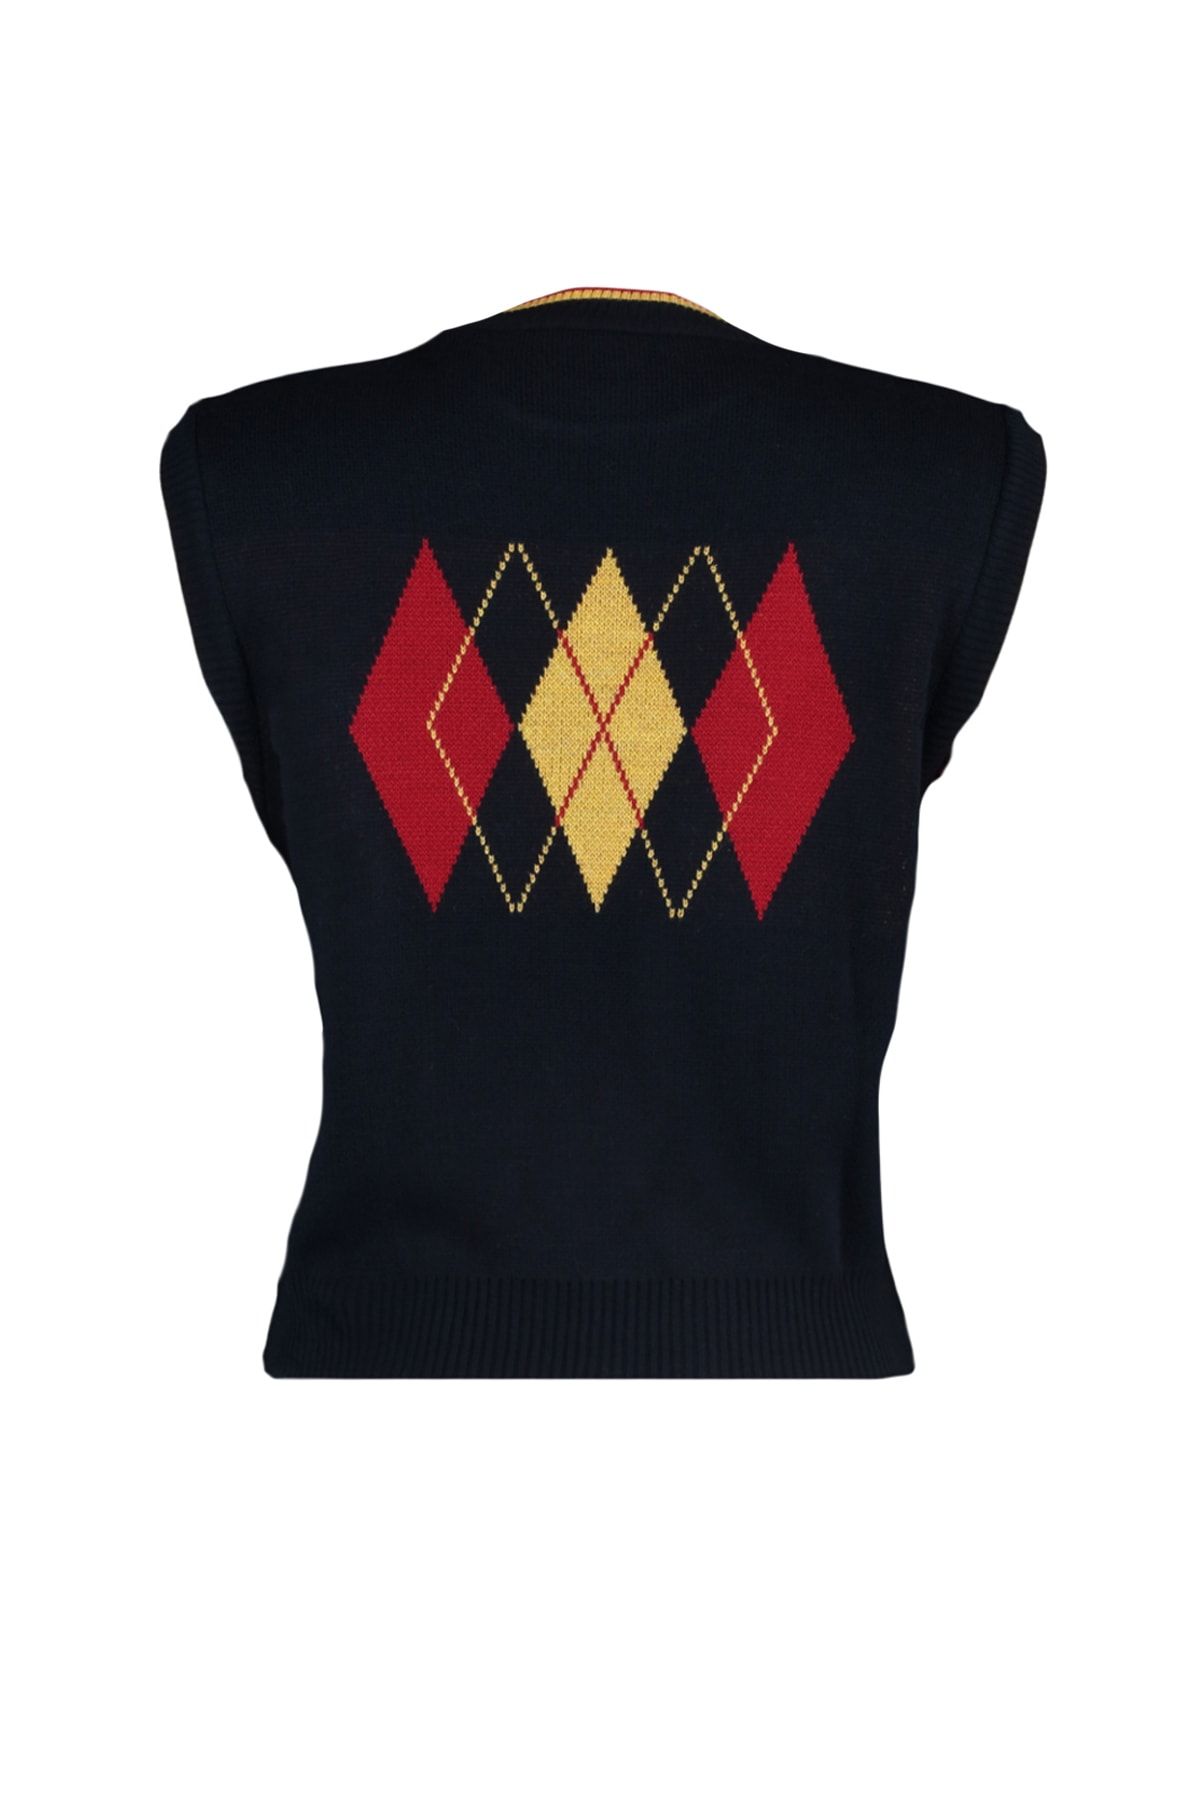 Crop Sweater Vest - Dark blue/argyle pattern - Ladies